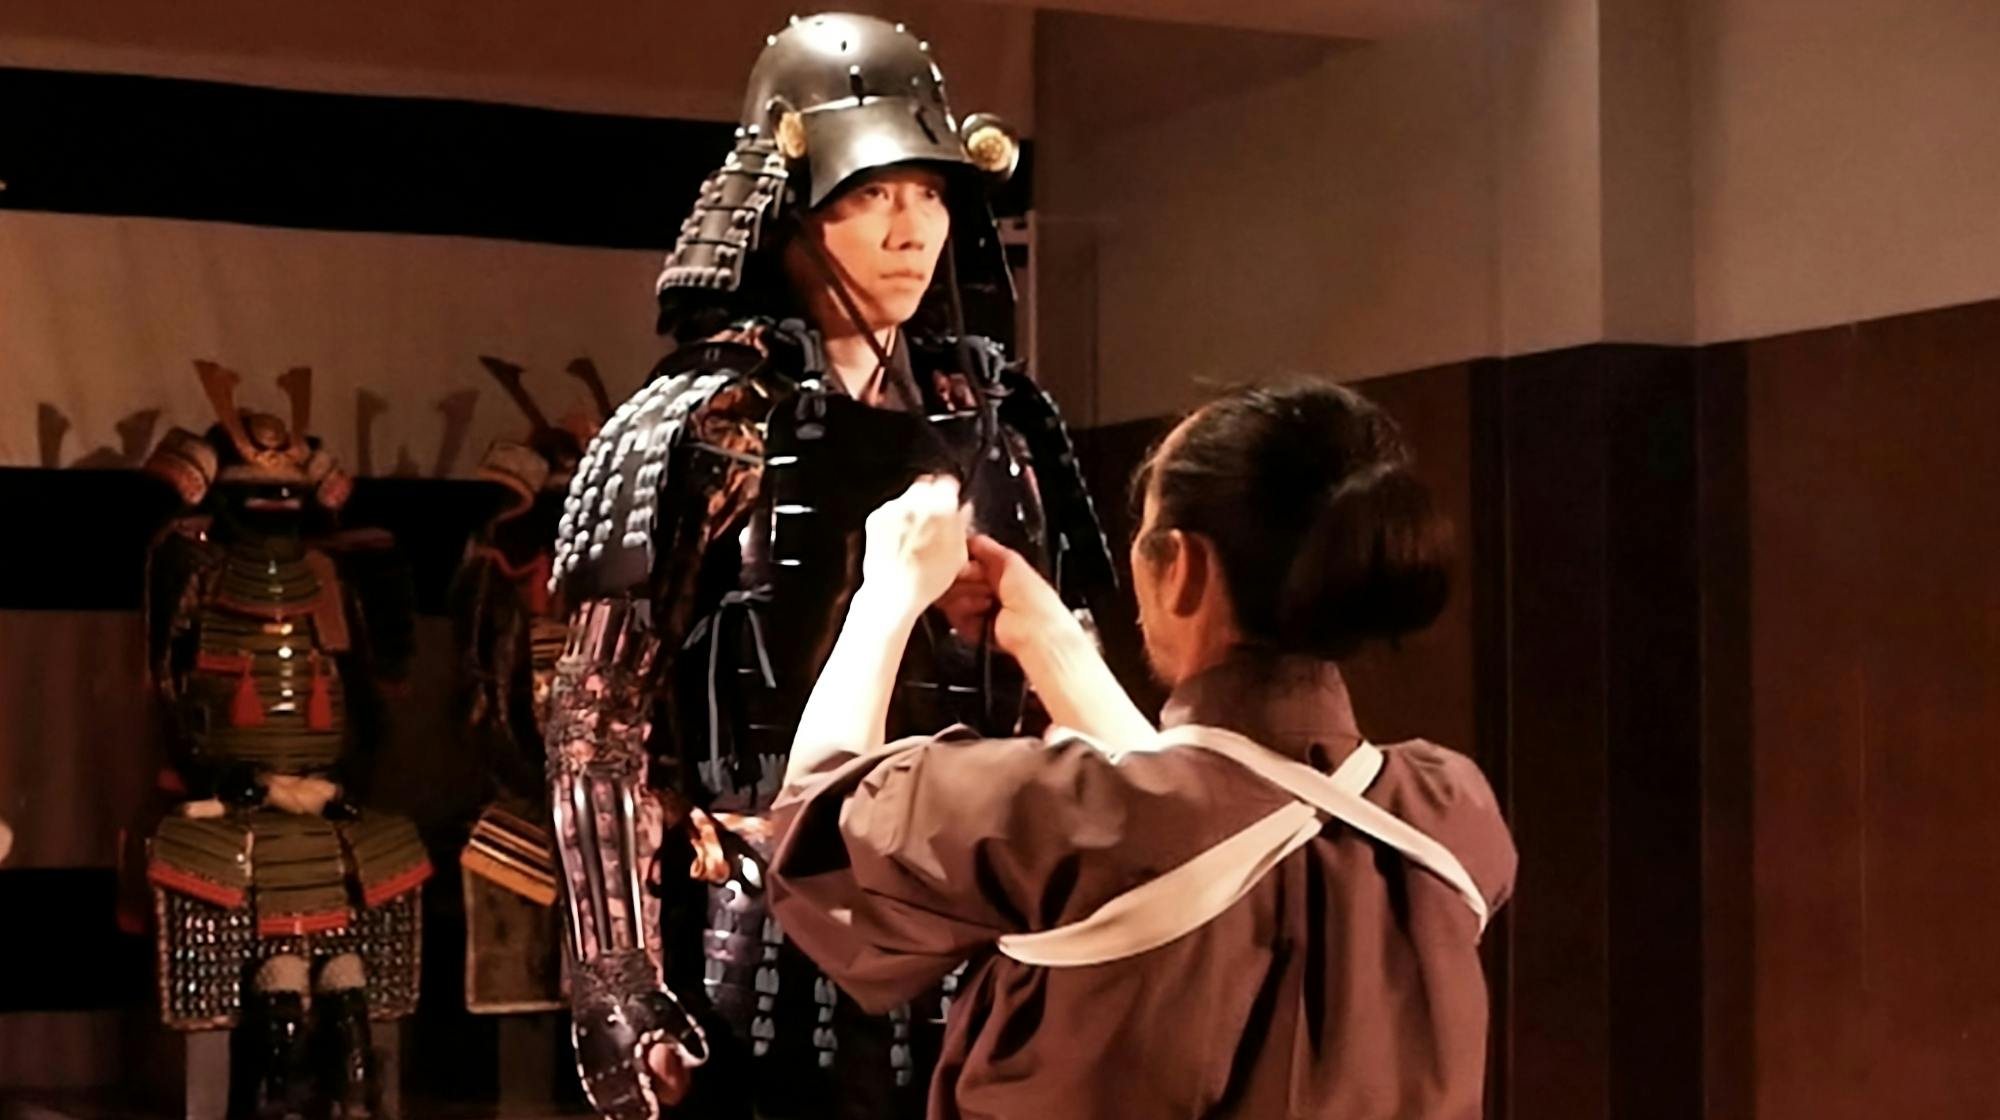 Experiência de armadura no Samurai Theatre em Tóquio